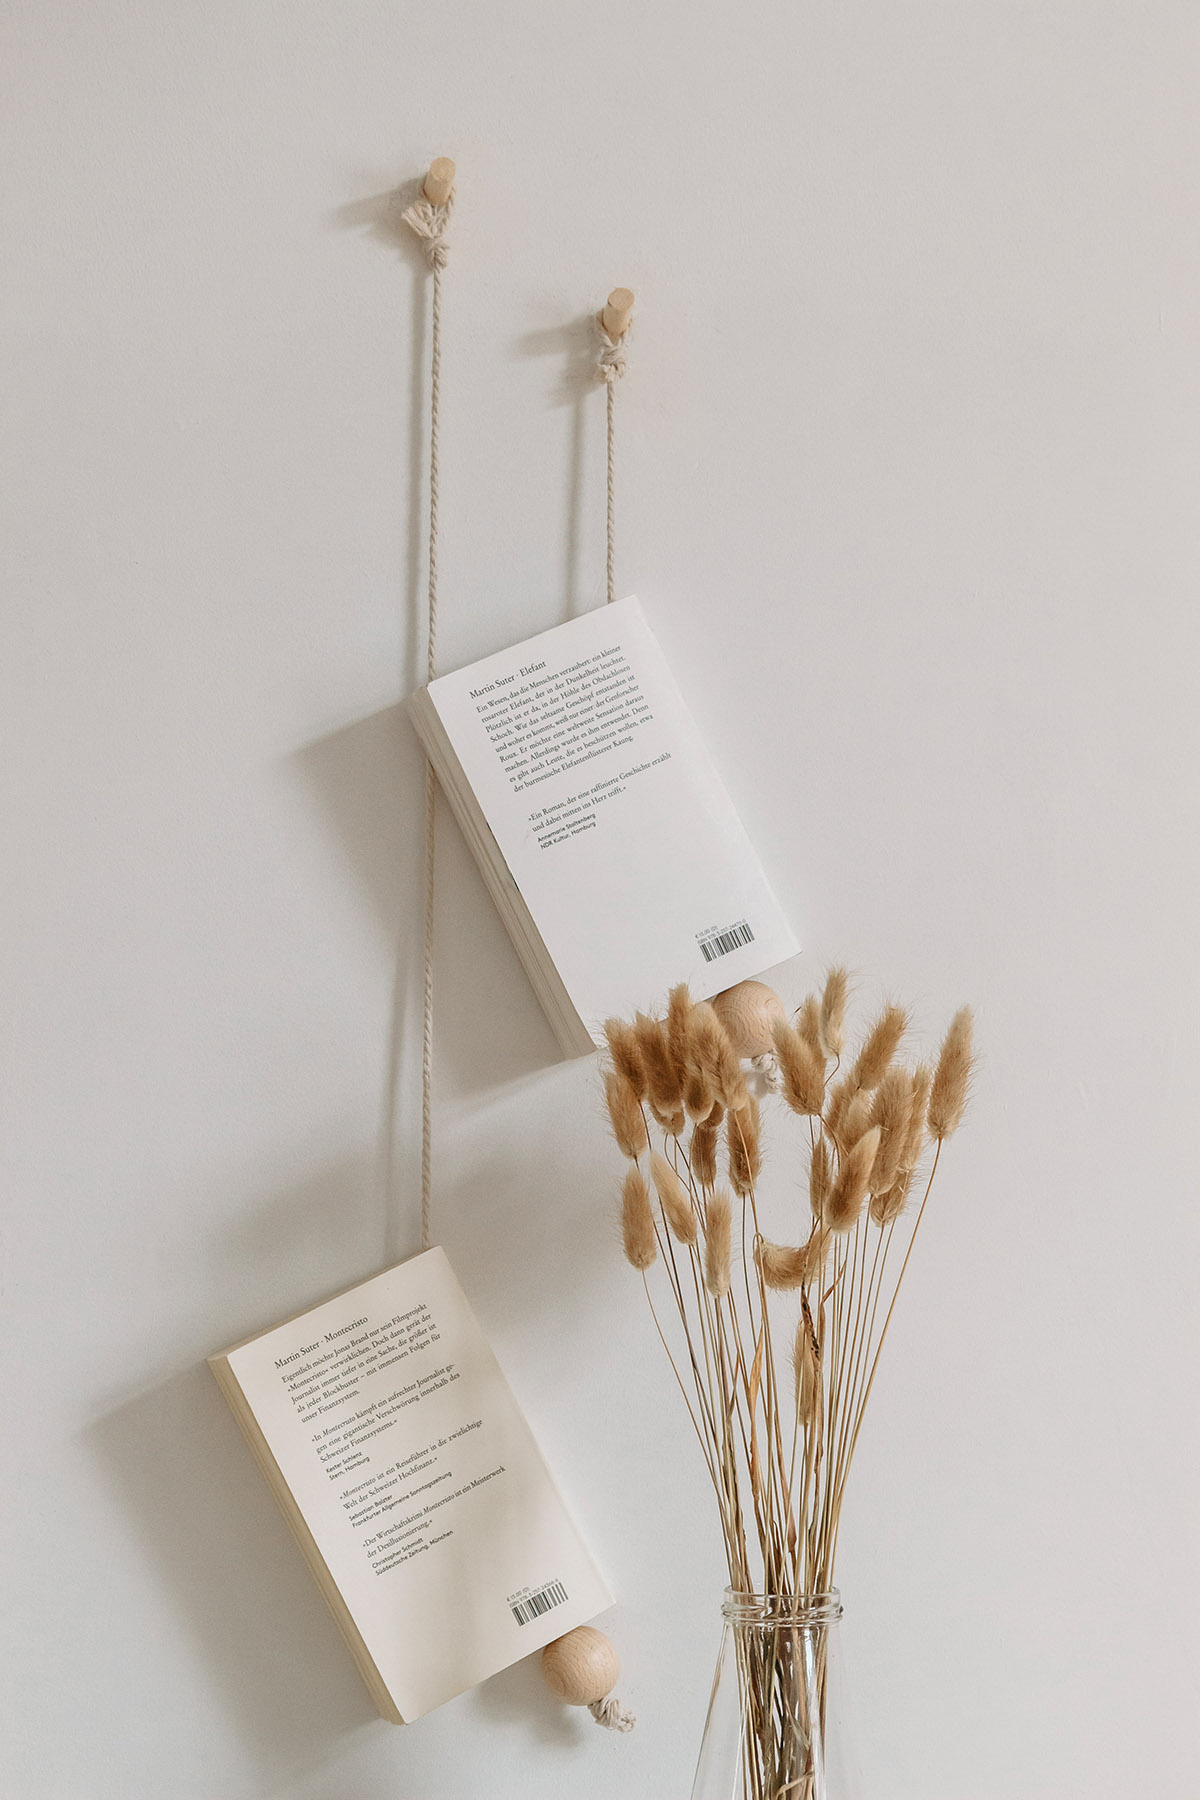 Alva & Ida - DIY Blog, Nachhaltigkeit, Natur, Slow living - DIY Magazinhänger - minimalistische Wandaufhängung